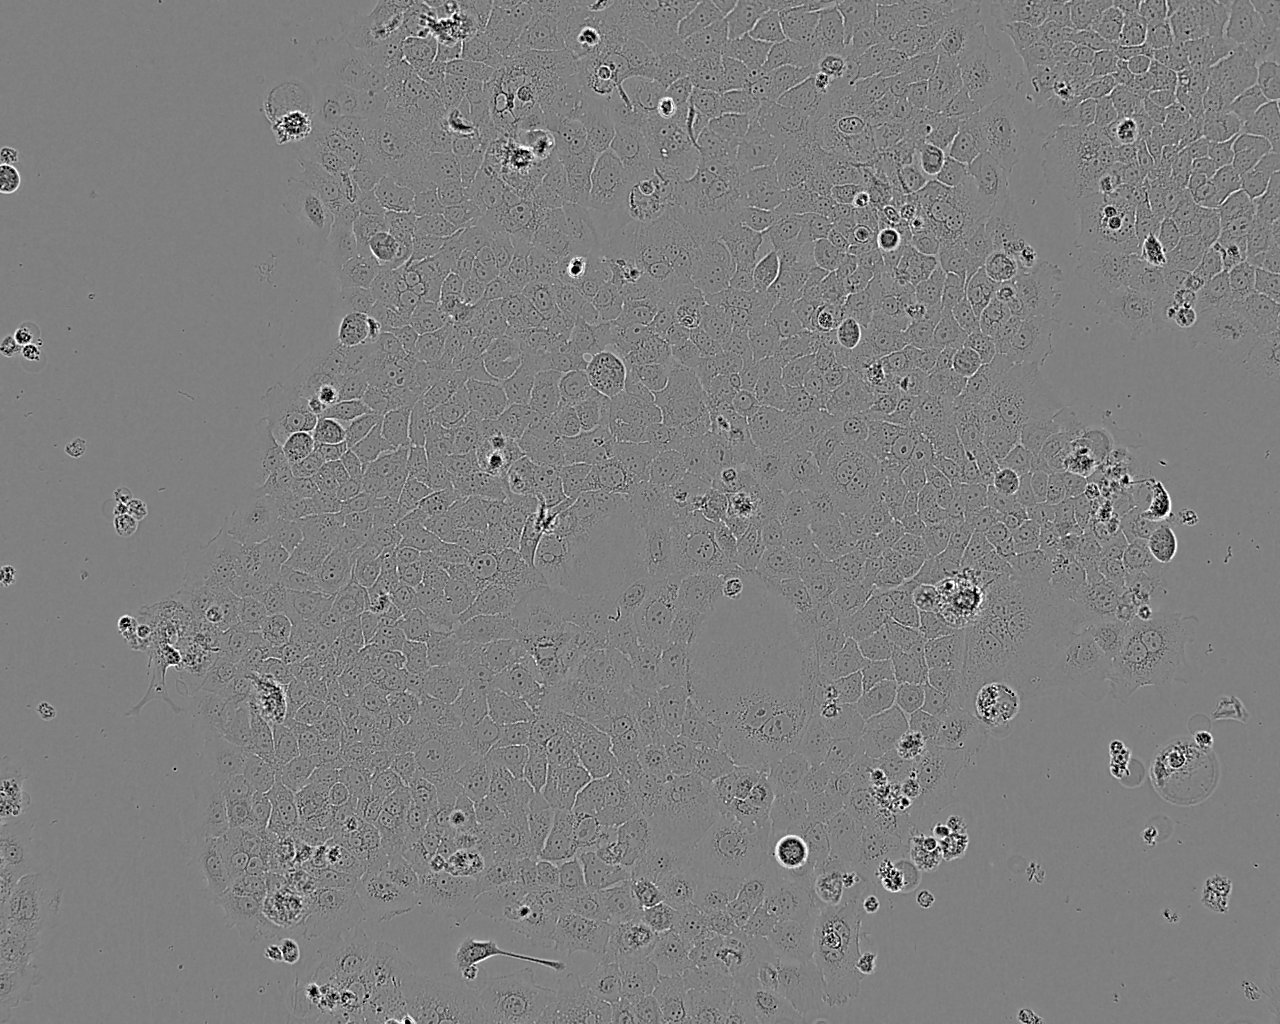 RGC-5 Cell:小鼠视网膜神经节细胞系